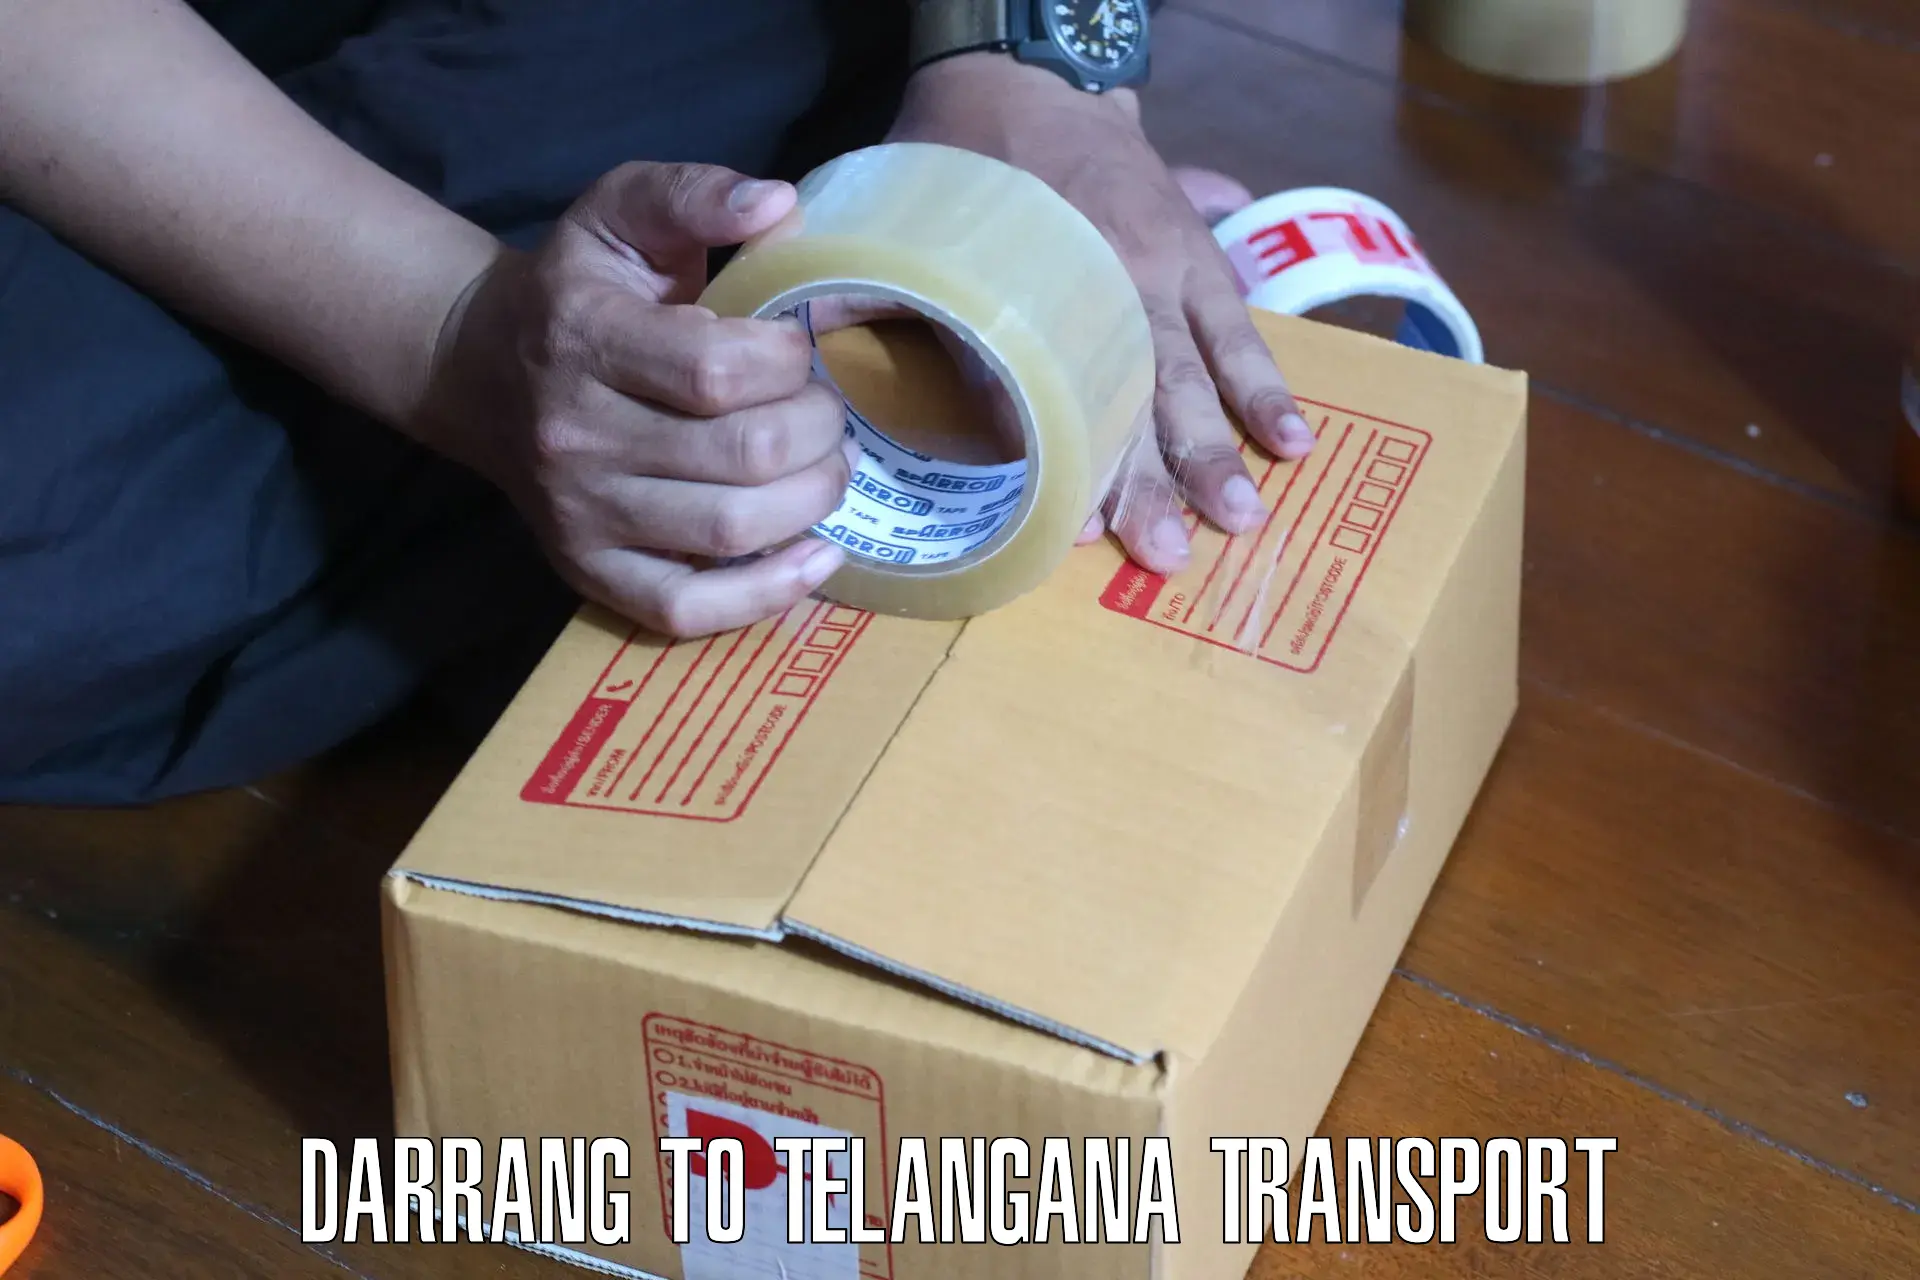 Cargo transportation services Darrang to Mudigonda